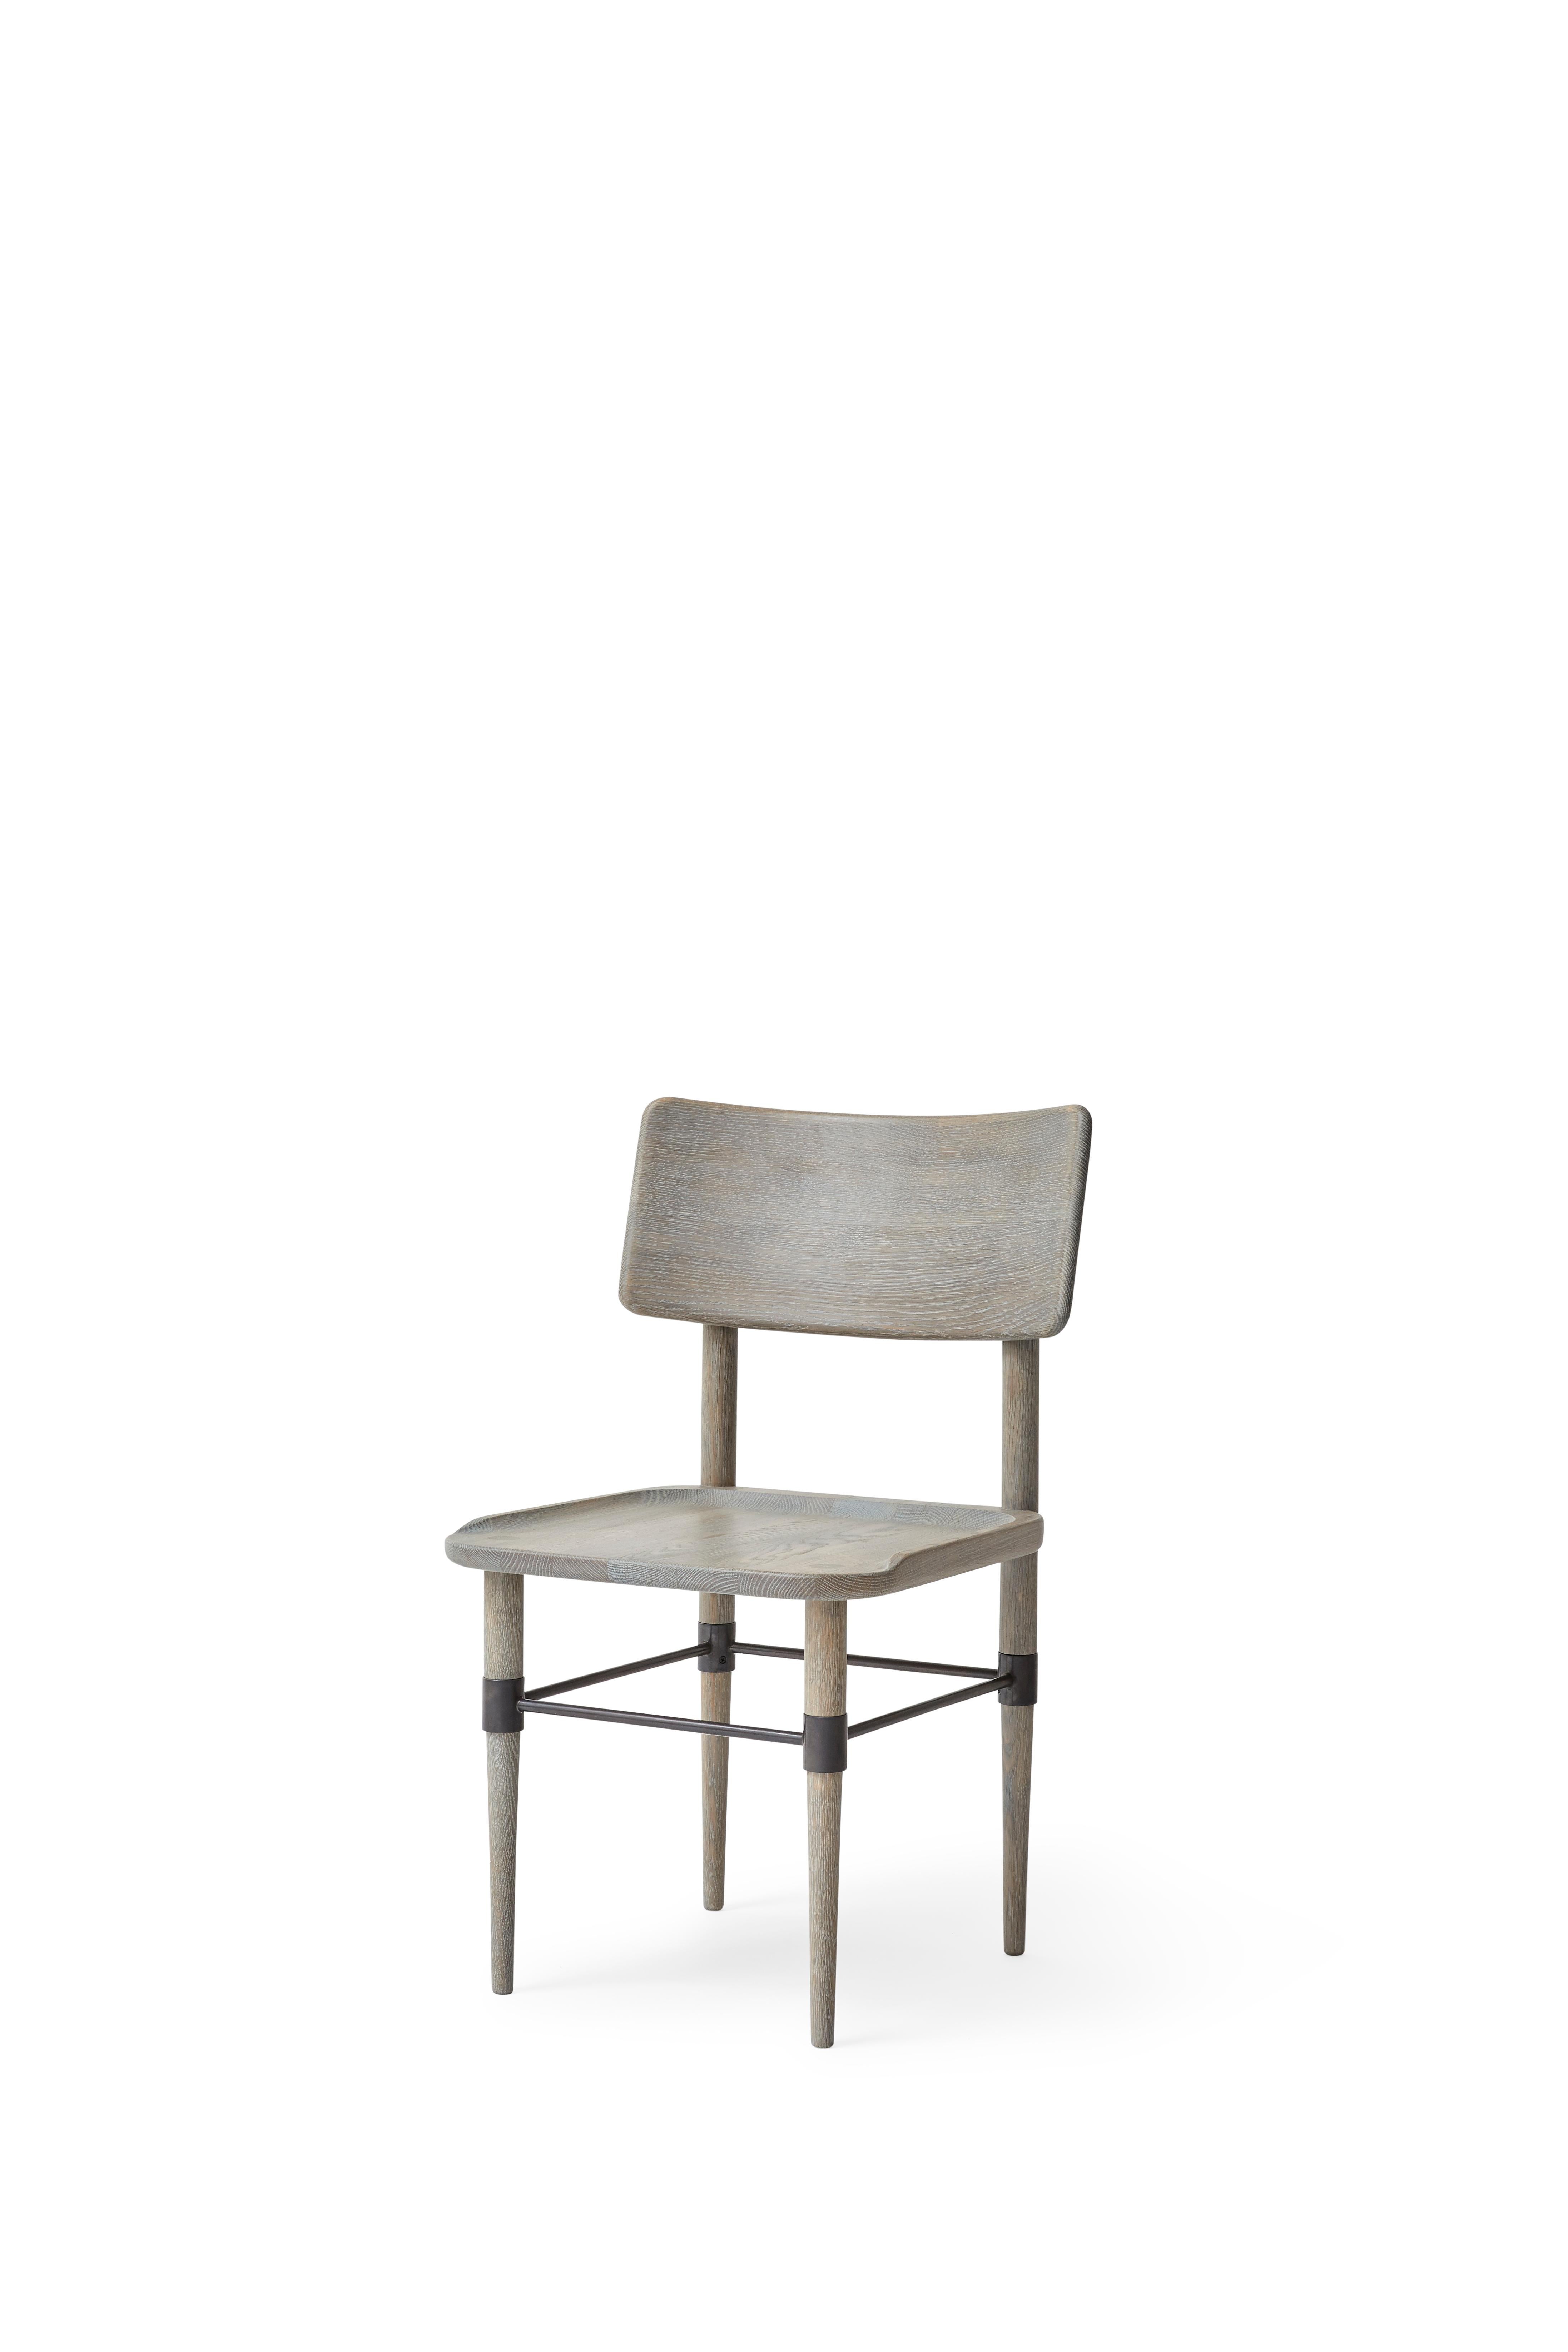 MG101 Esszimmerstuhl aus Eiche Grey Nature und geschwärztem Metall. Das Sitzpad ist nicht im Lieferumfang enthalten und kann separat bestellt werden.

Die Holmen-Serie hat ihren Ursprung in einer Möbelserie, die für das Michelin-Restaurant 108 in